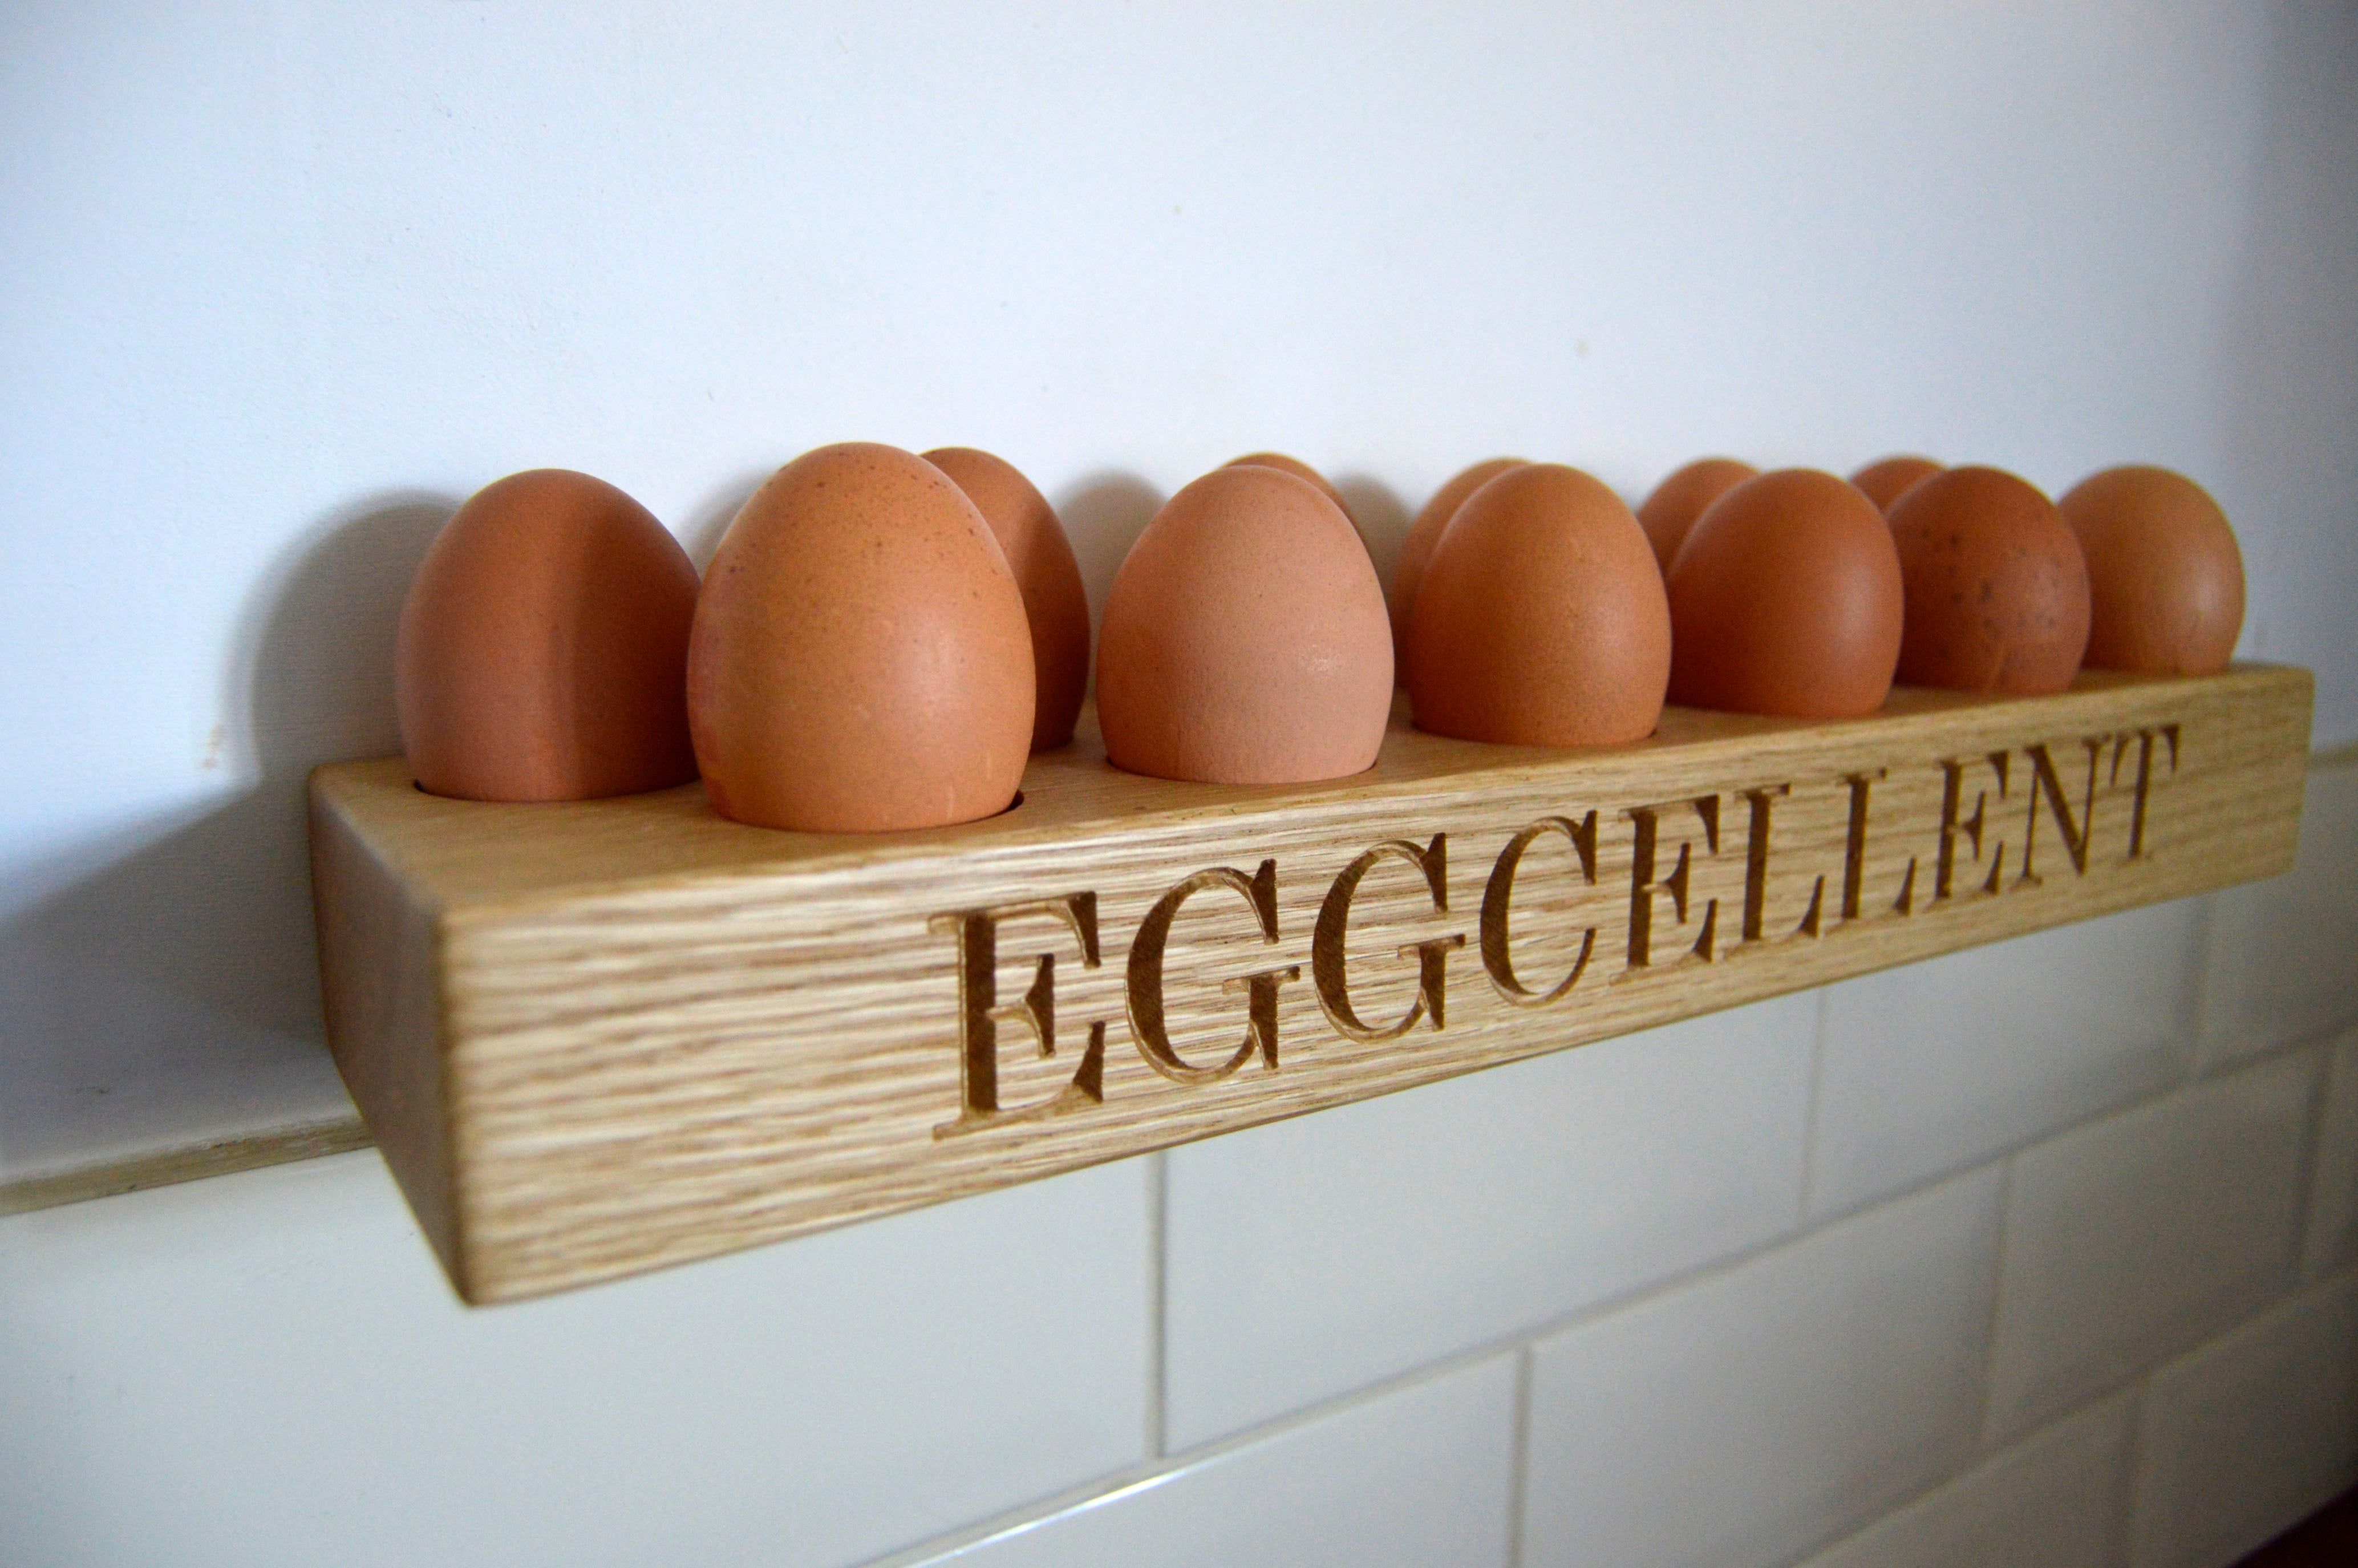 Eggs holder